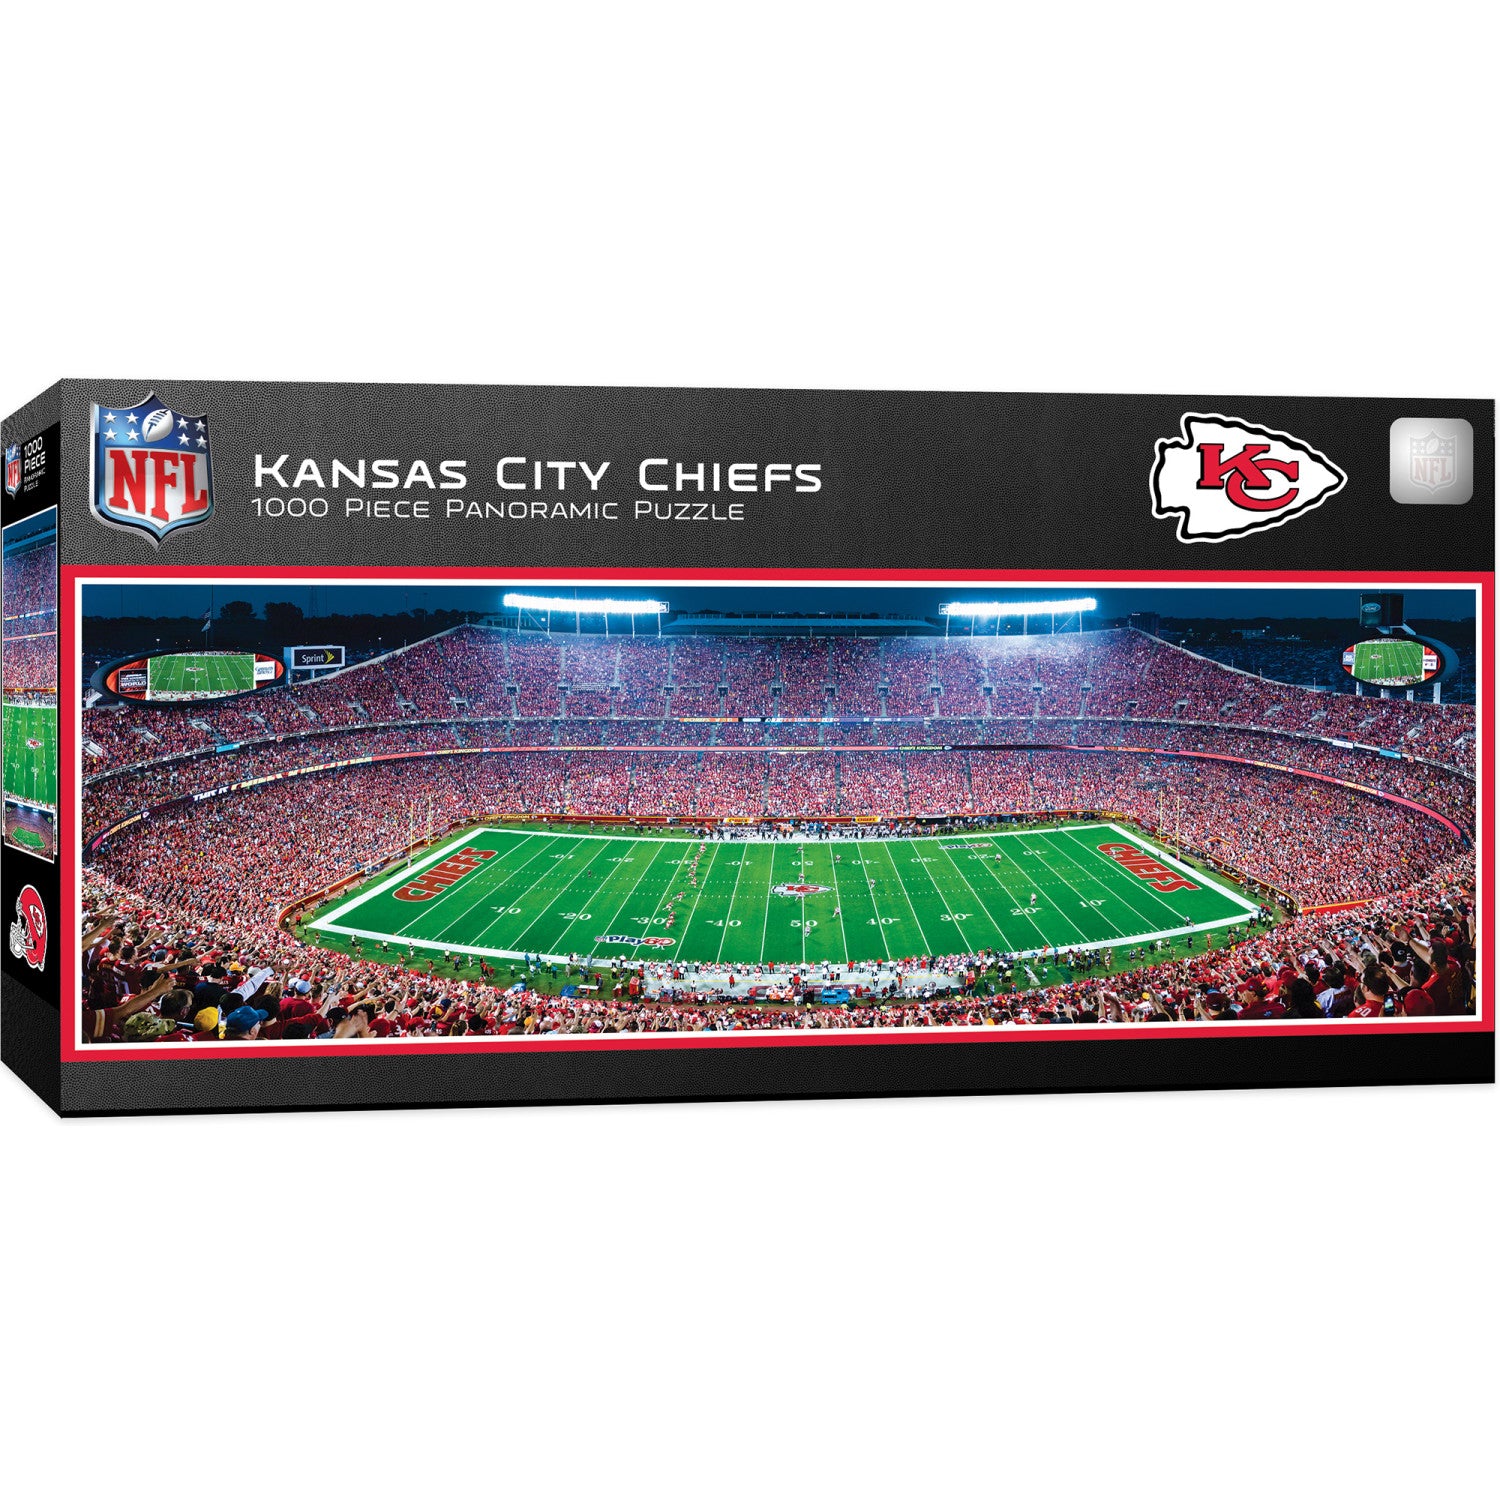 Kansas City Chiefs - 1000 Piece Panoramic Puzzle - Center View